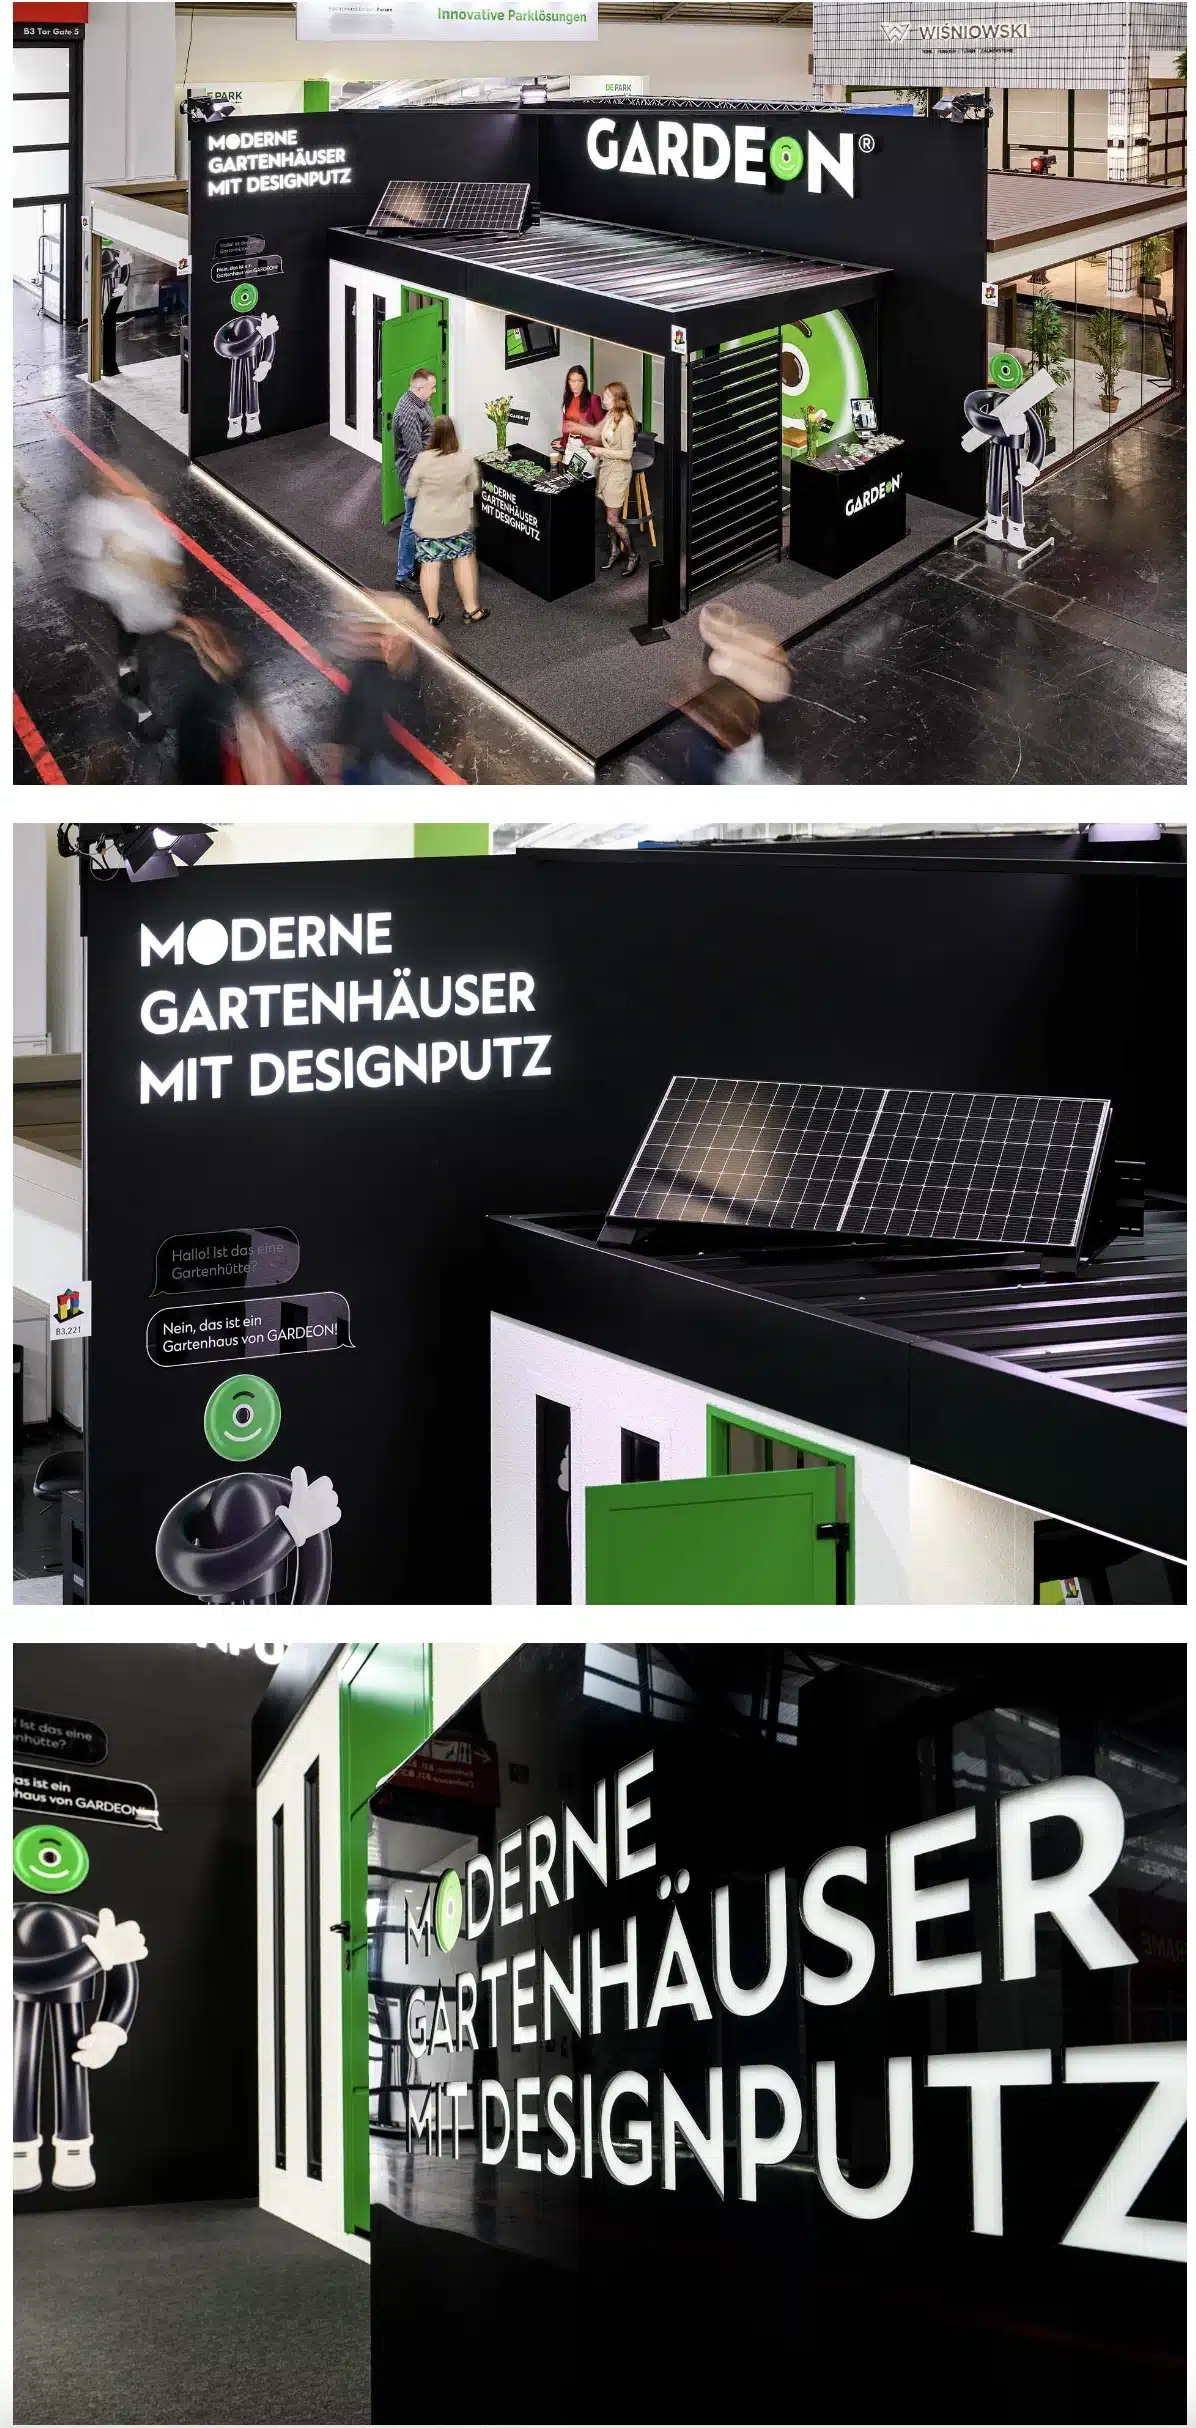 GARDEON branding fotky z výstavy v Nemecku